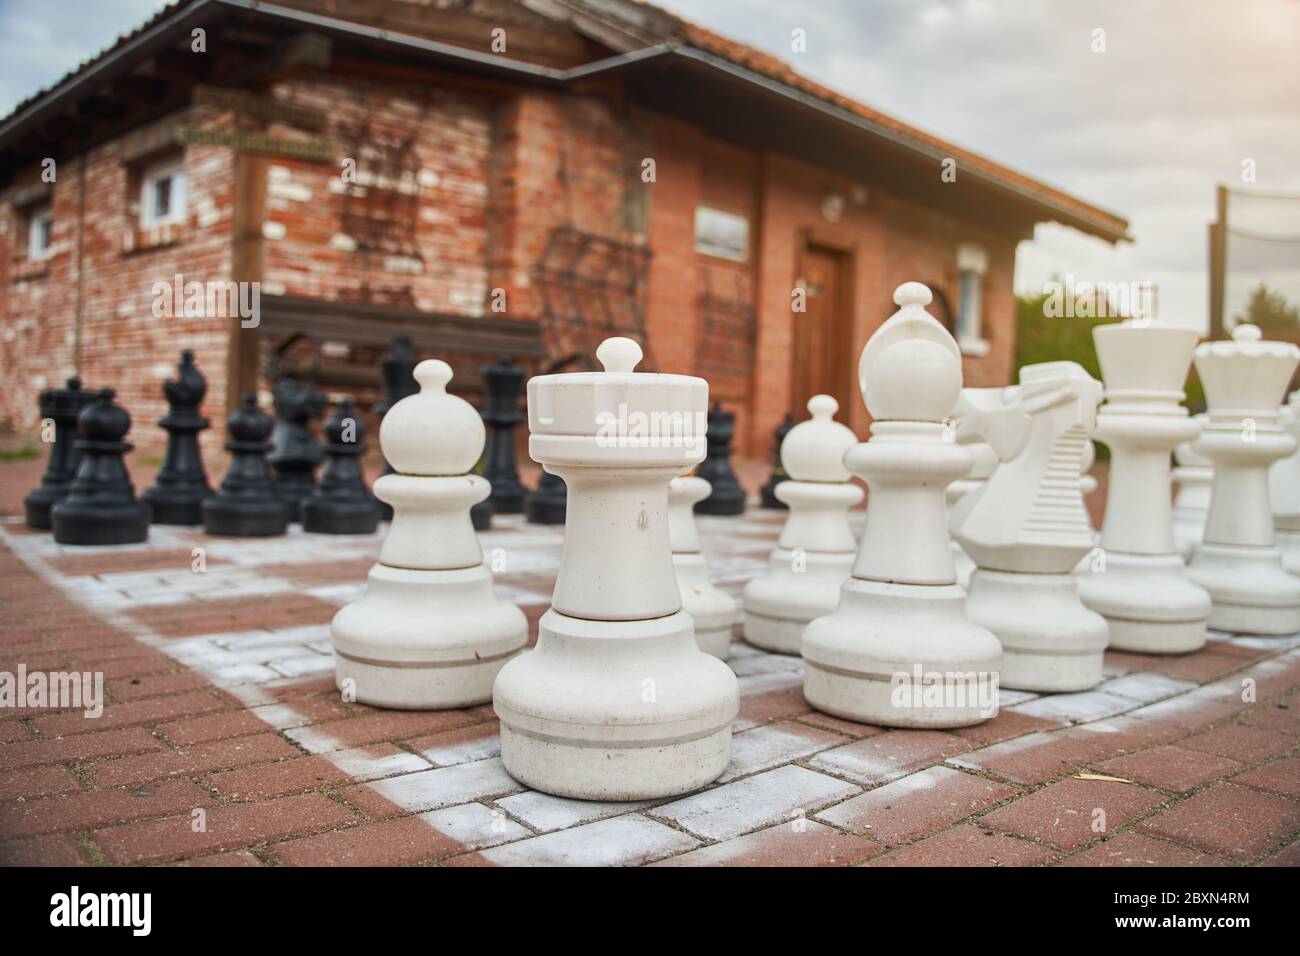 White giant chess pieces on the street. Chess. Street game. Stock Photo